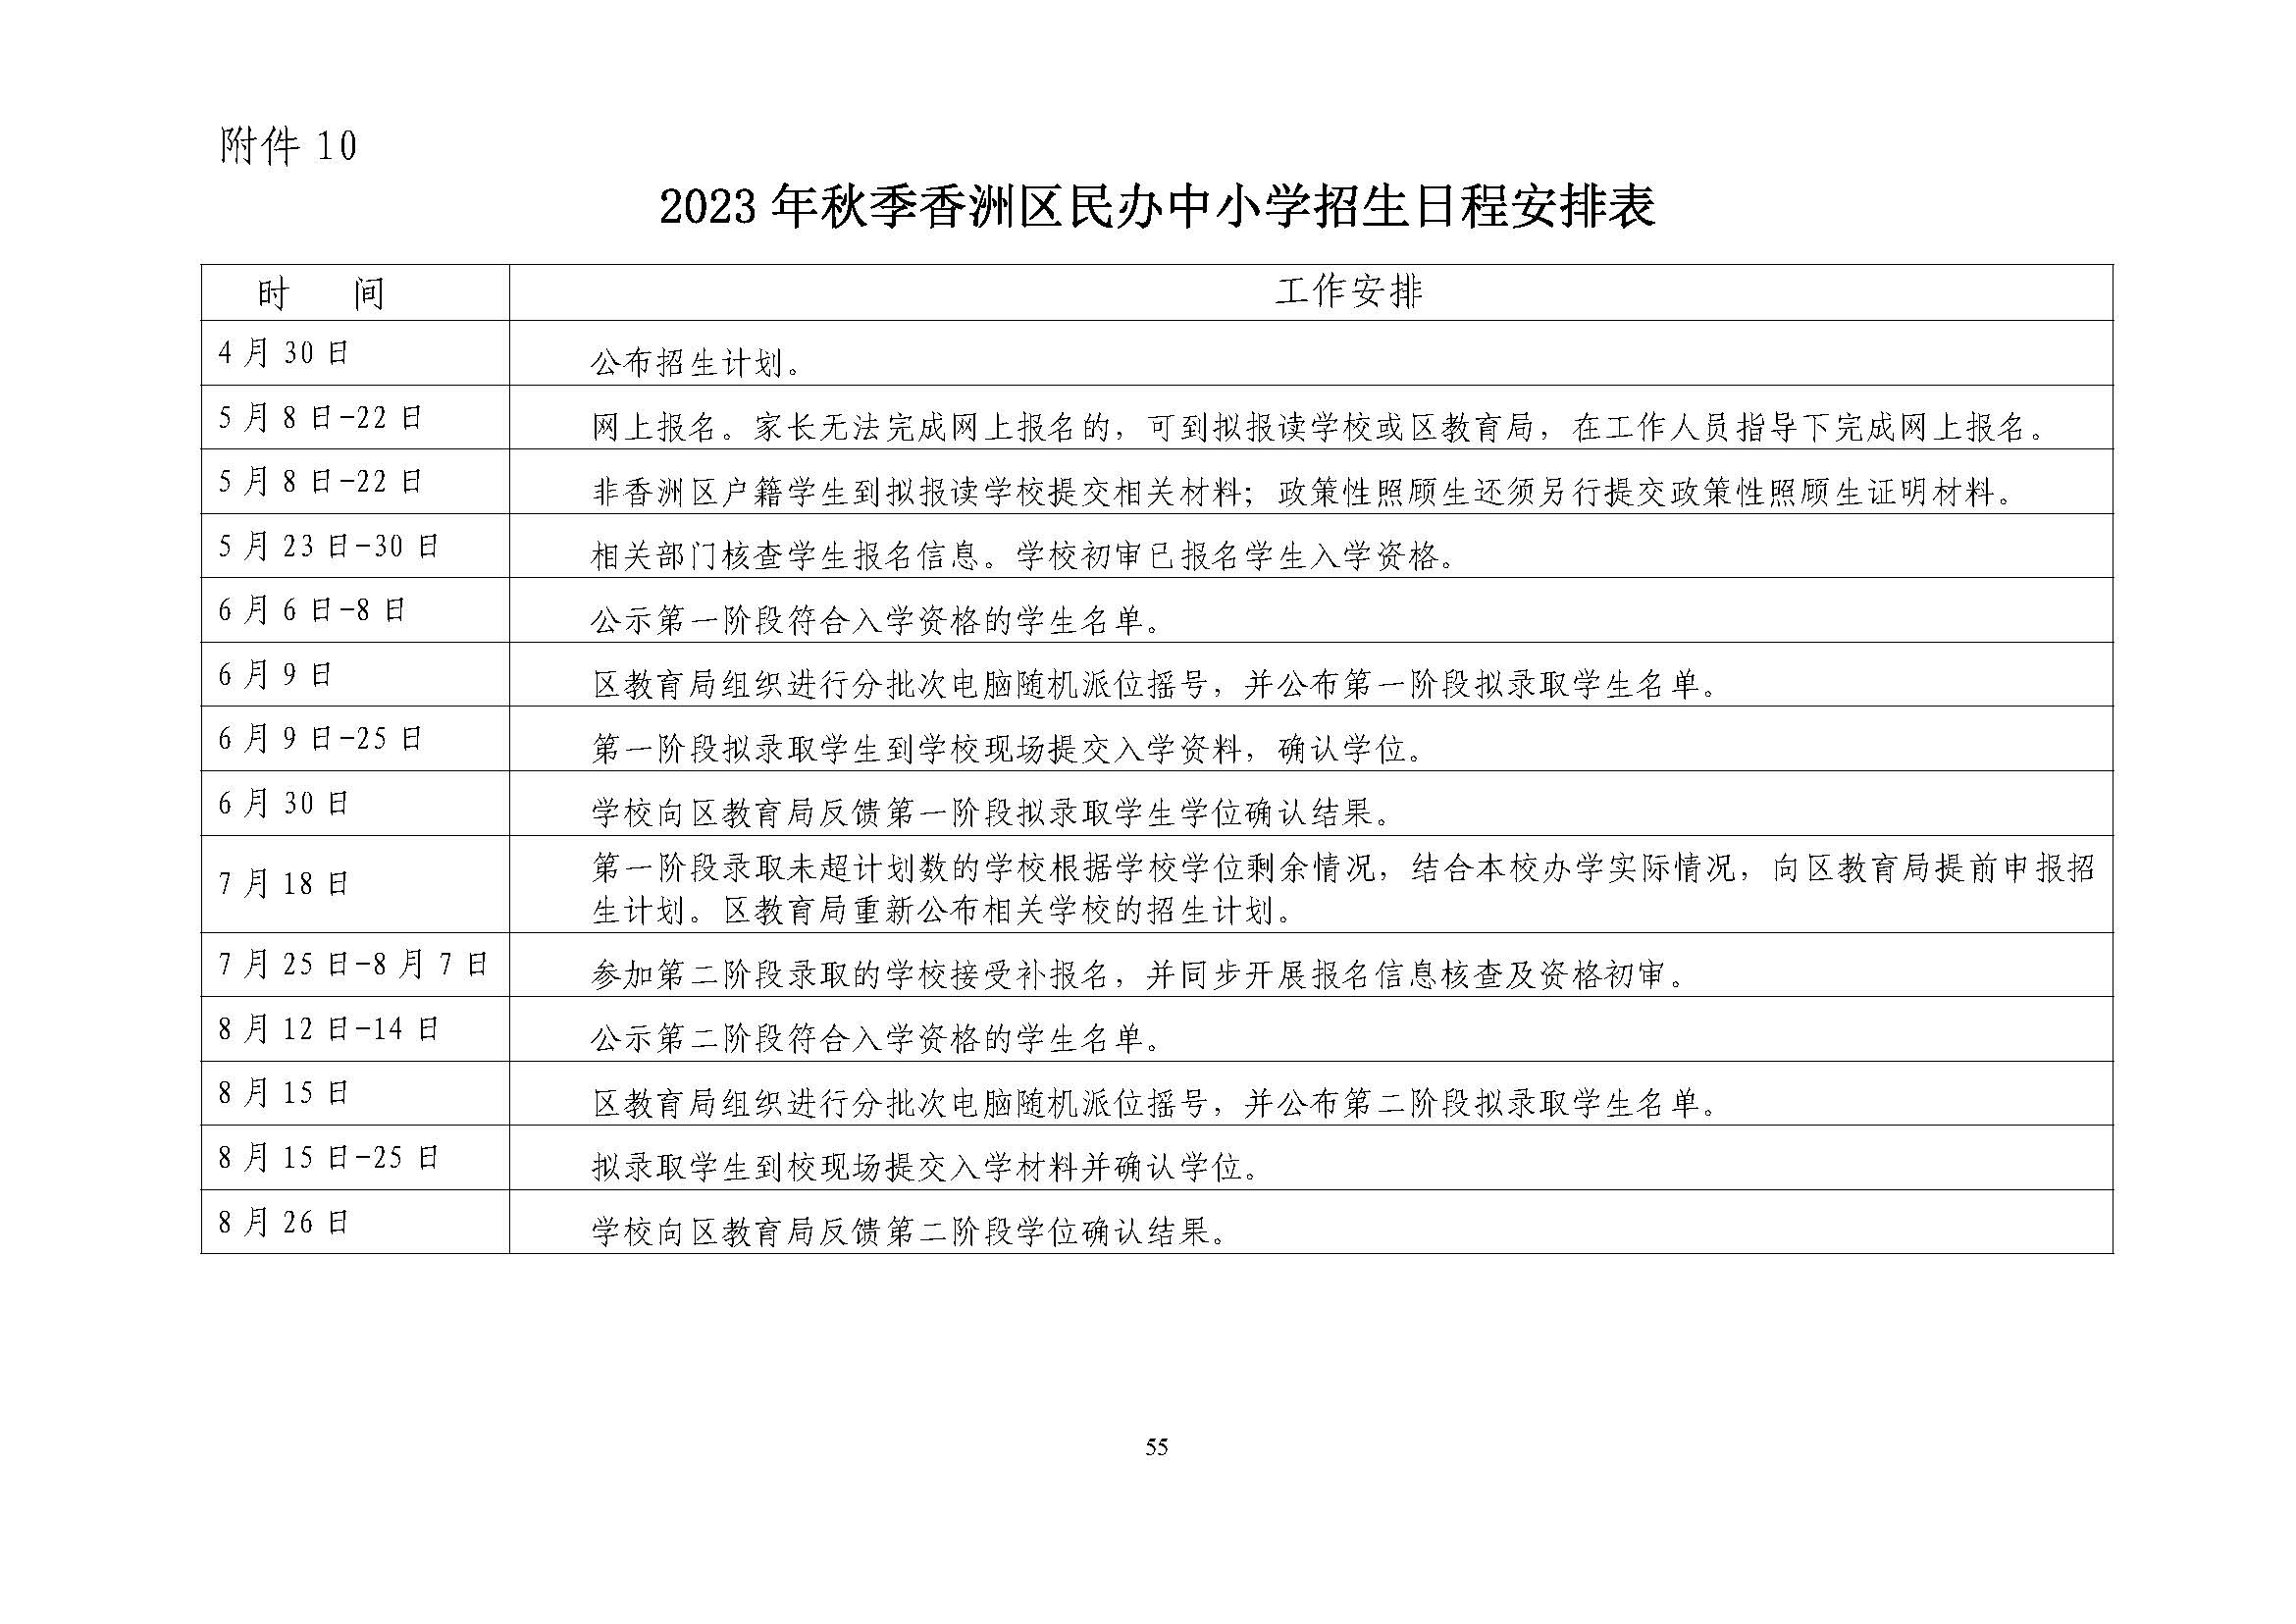 關于印發2023年秋季香洲區中小學招生工作實施細則的通知（定稿）_頁面_56.jpg